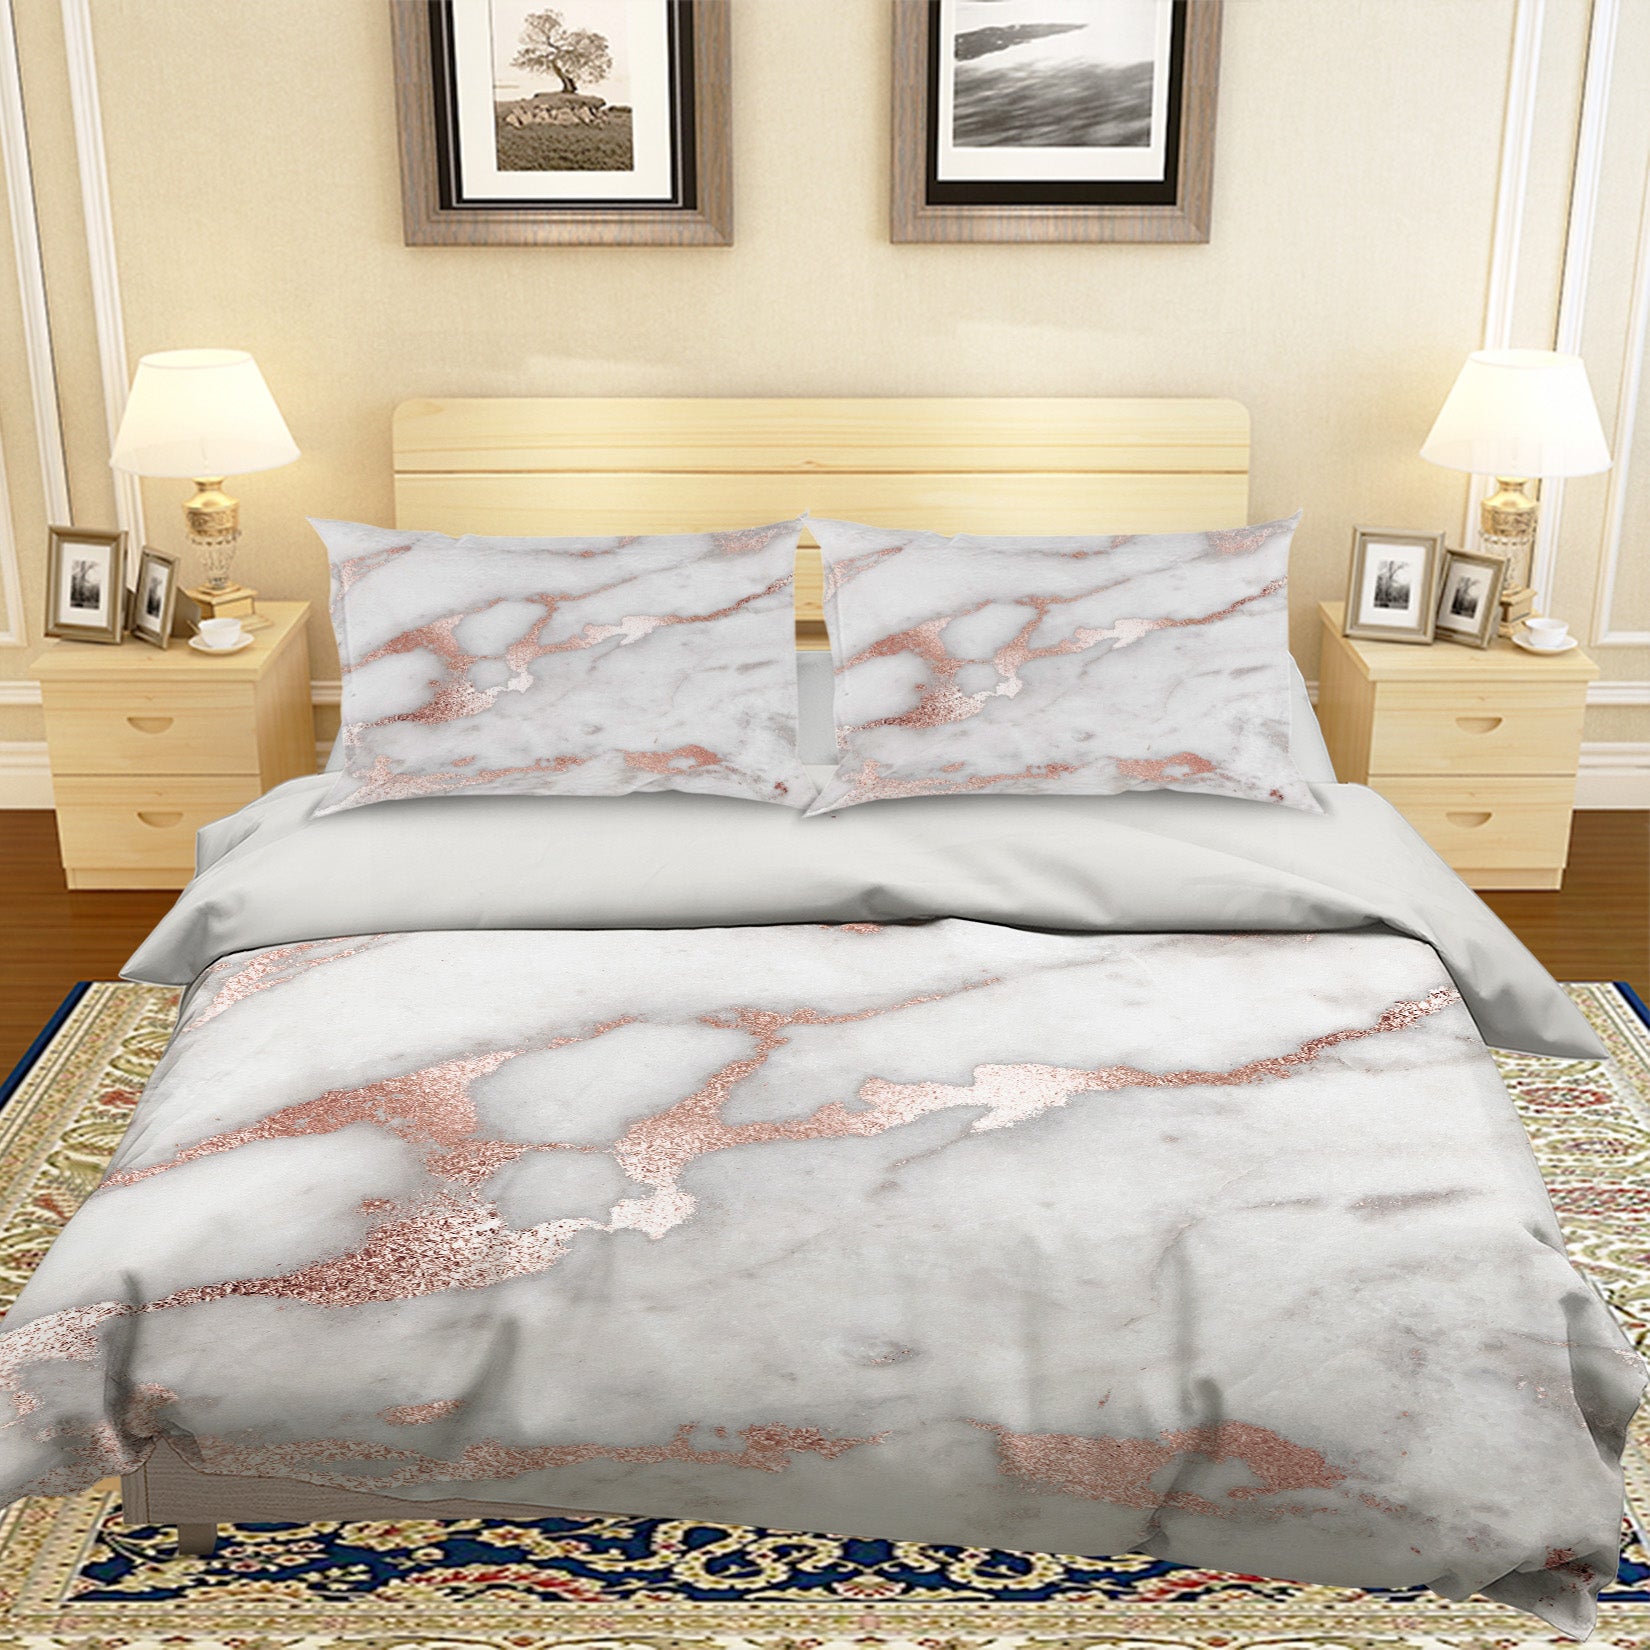 3D Marbling 18143 Uta Naumann Bedding Bed Pillowcases Quilt